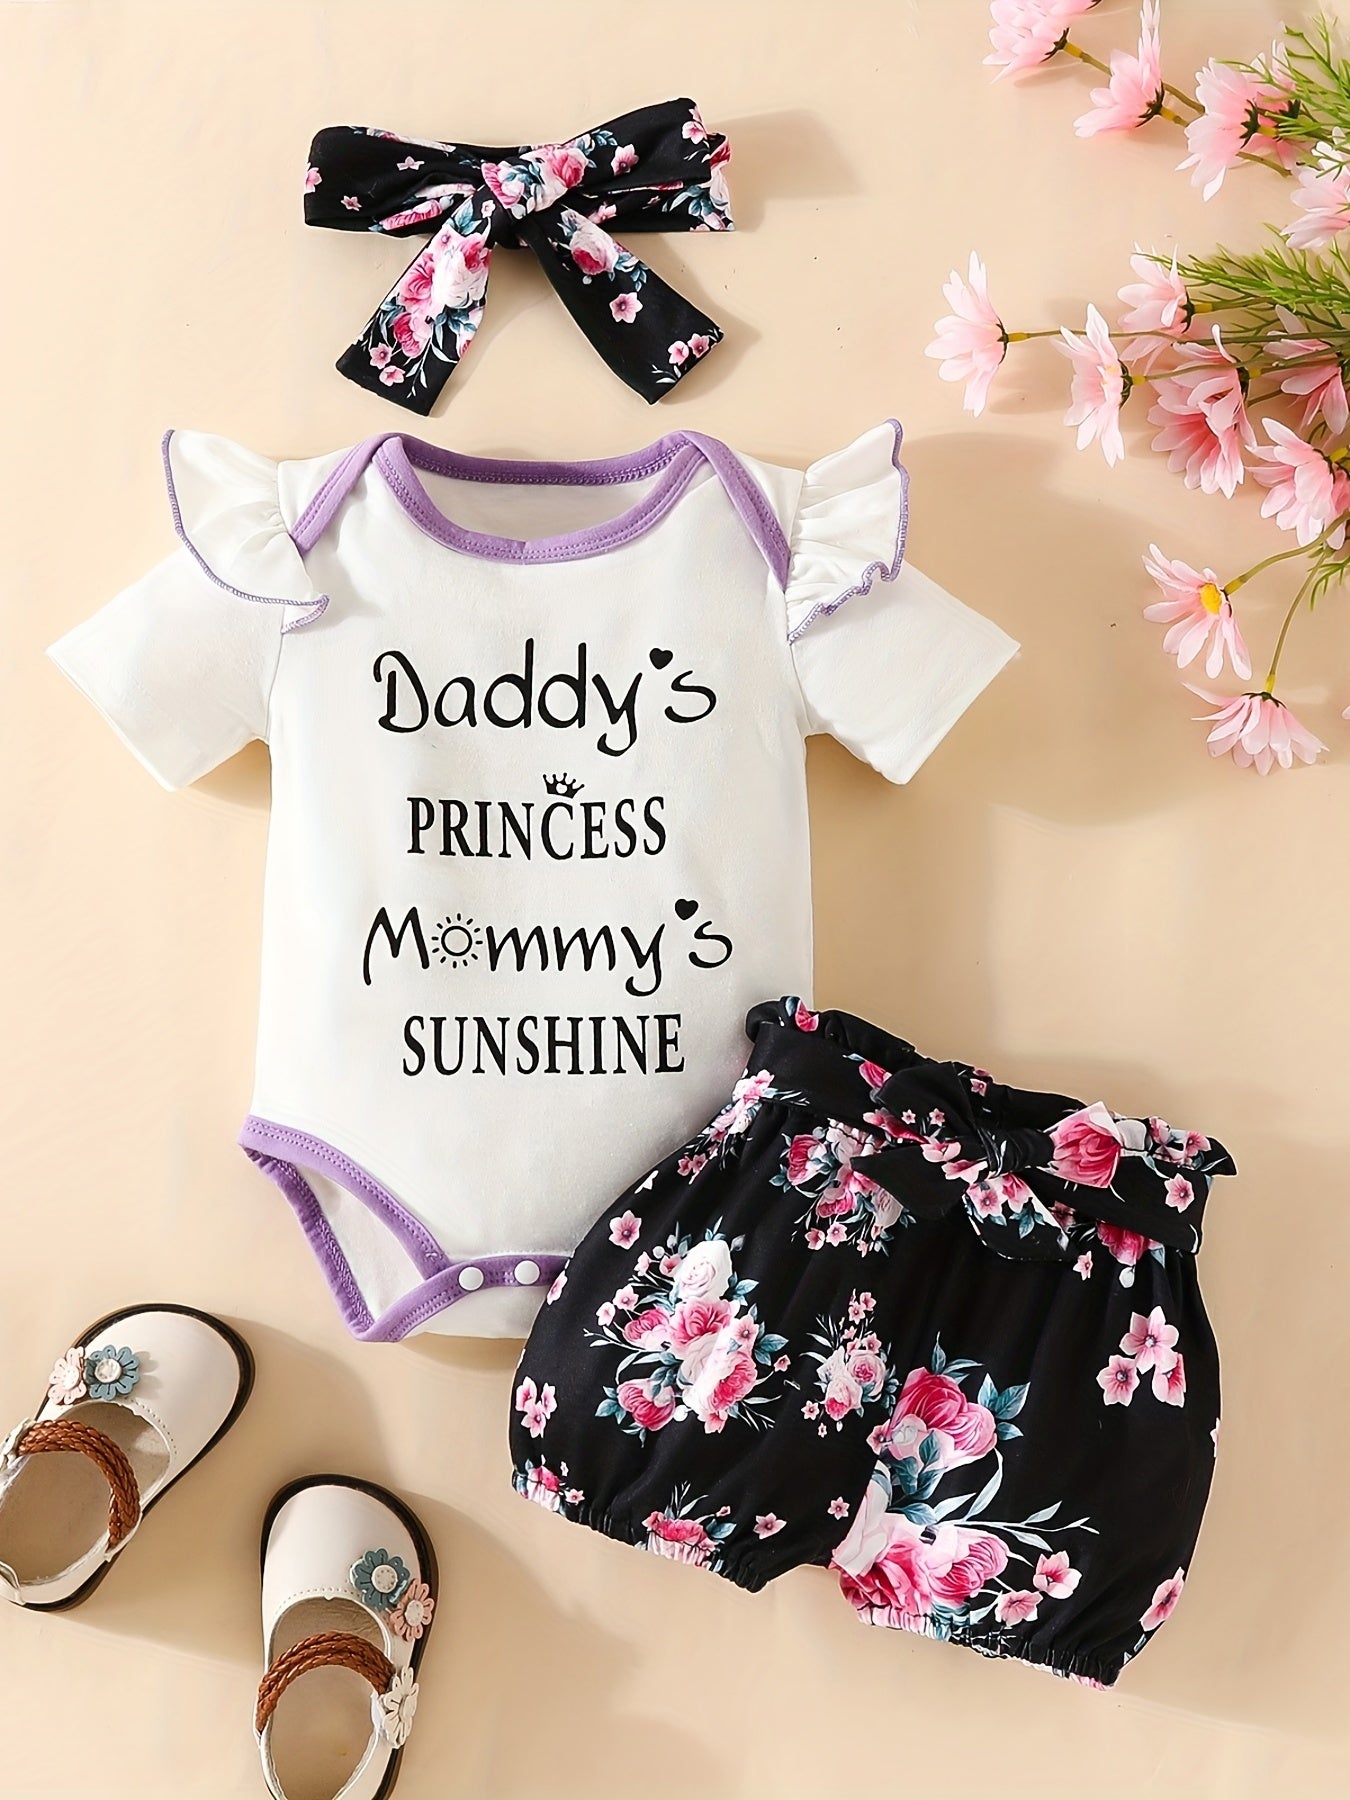 Baby Girl's "I'm My Daddy's Girl And My Mommy's World" Graphic Onesie & Floral Shorts & Headband Set